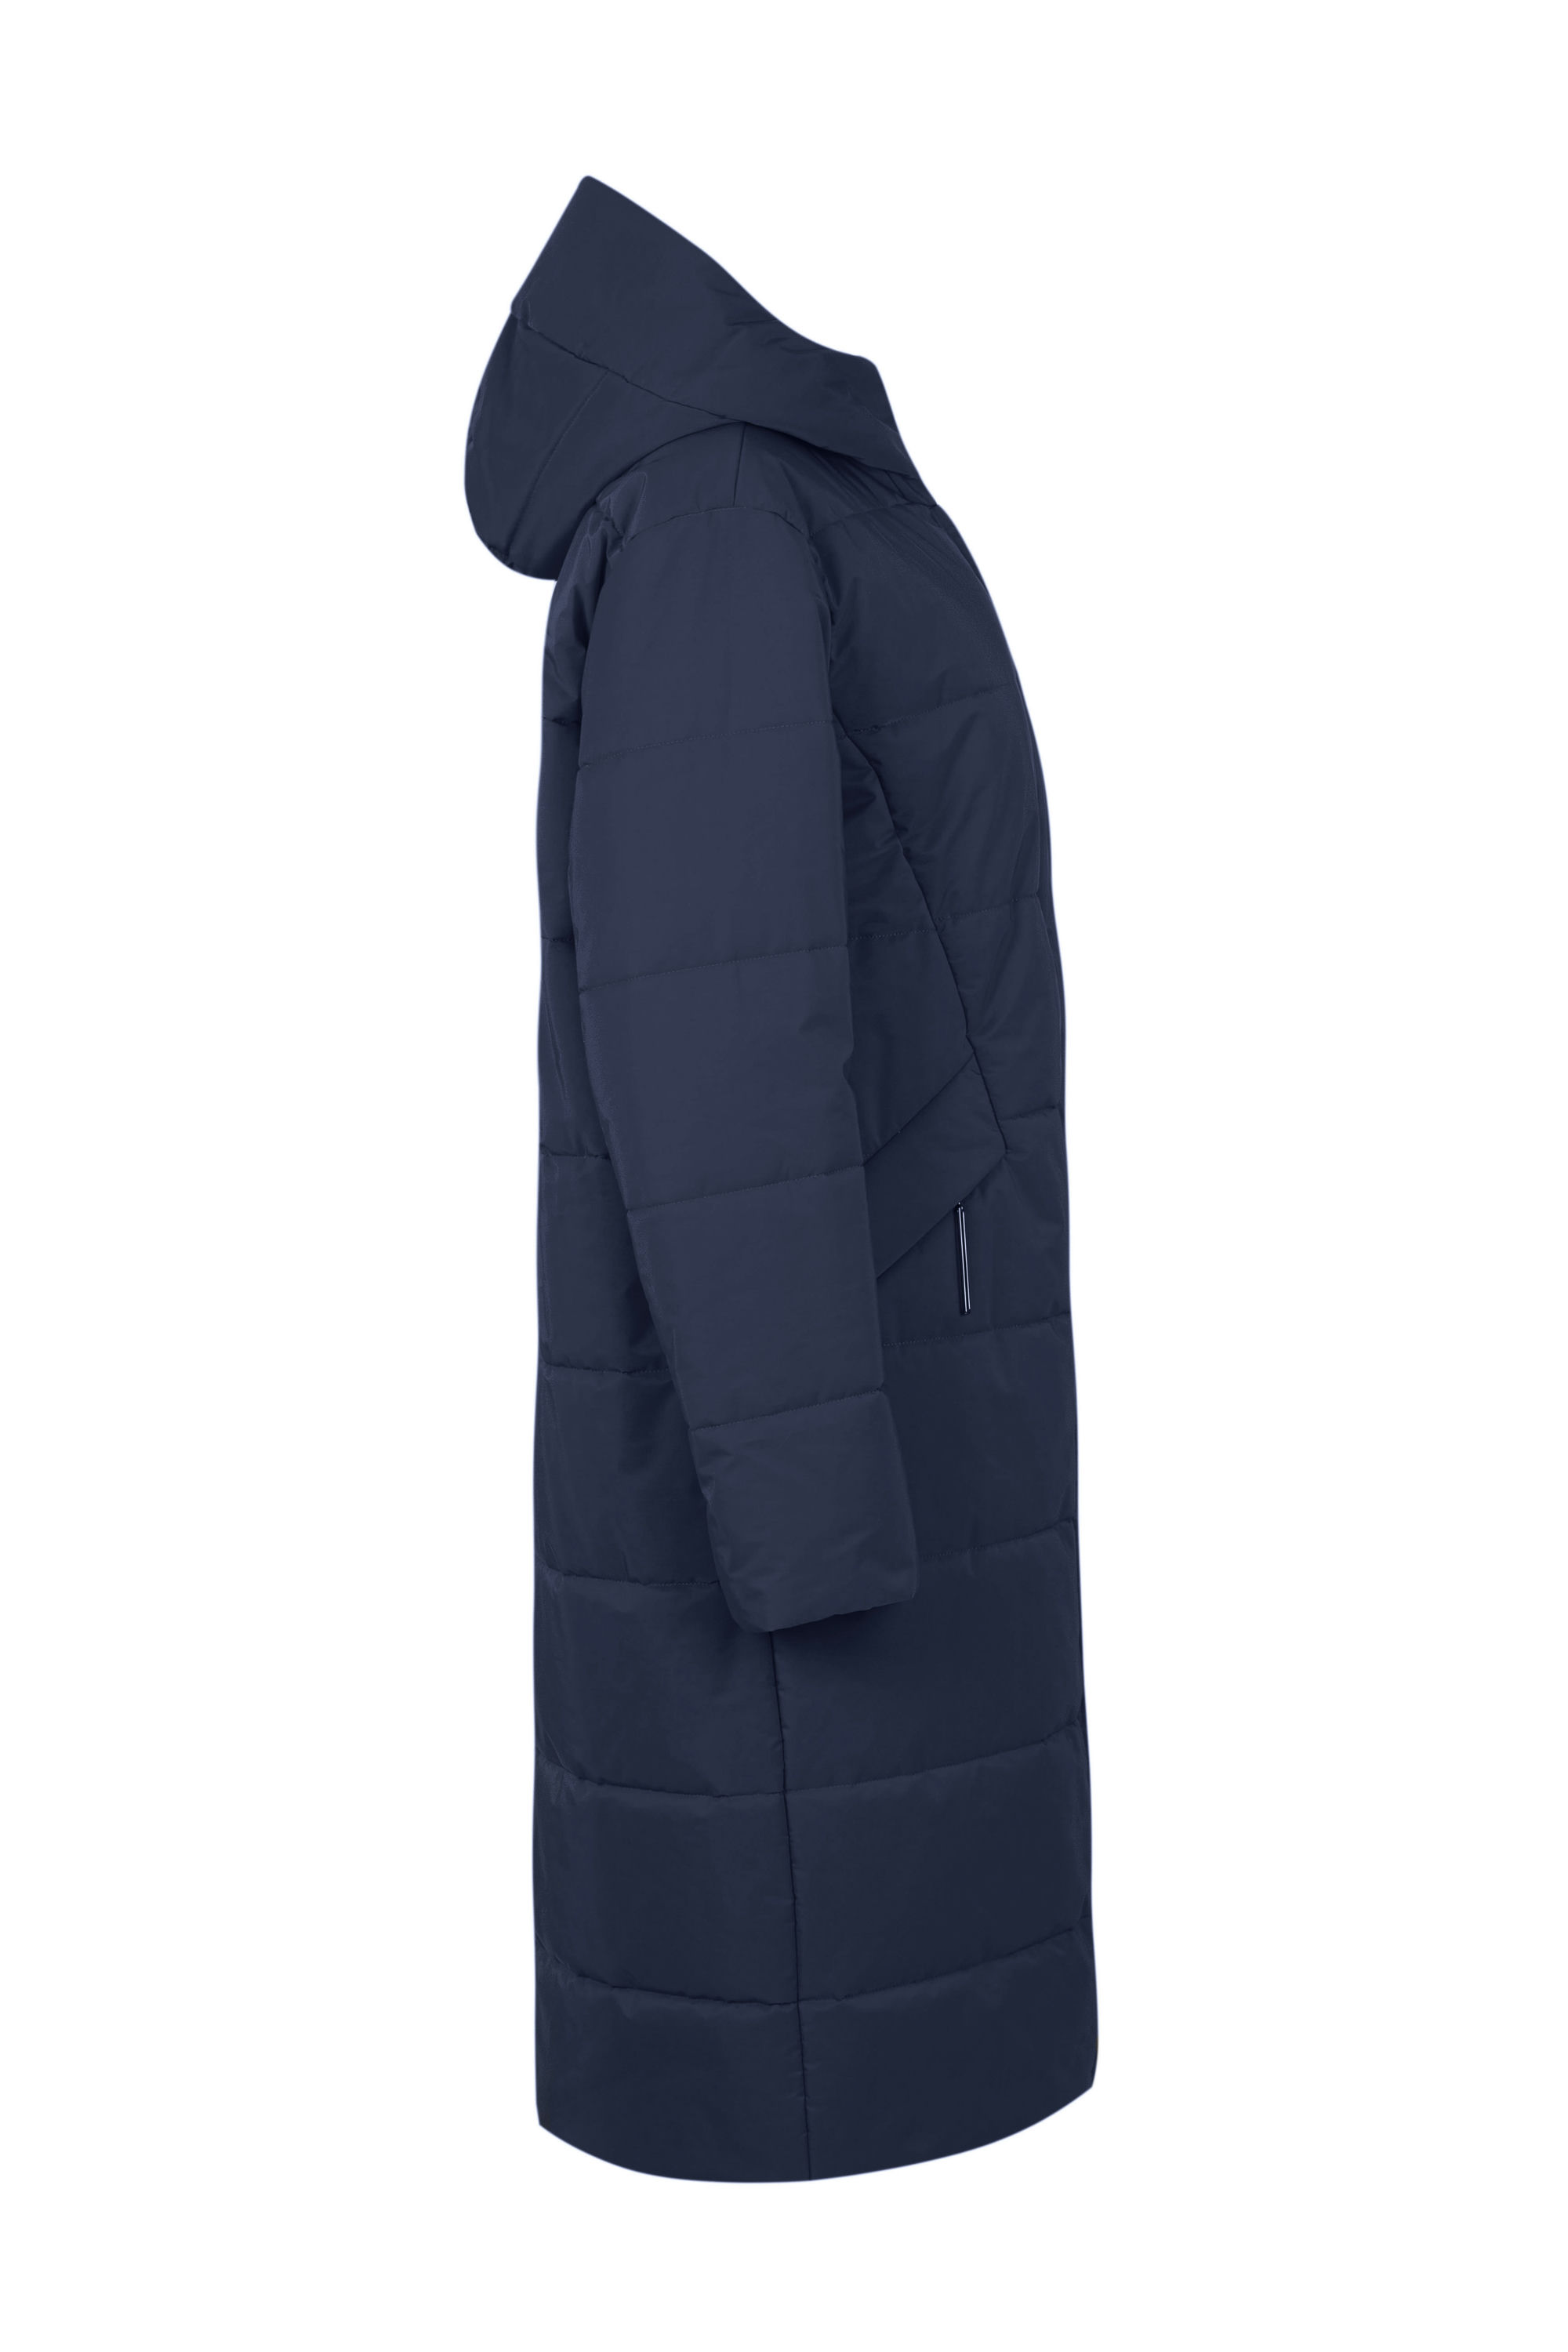 Пальто женское плащевое утепленное 5-13063-1. Фото 2.